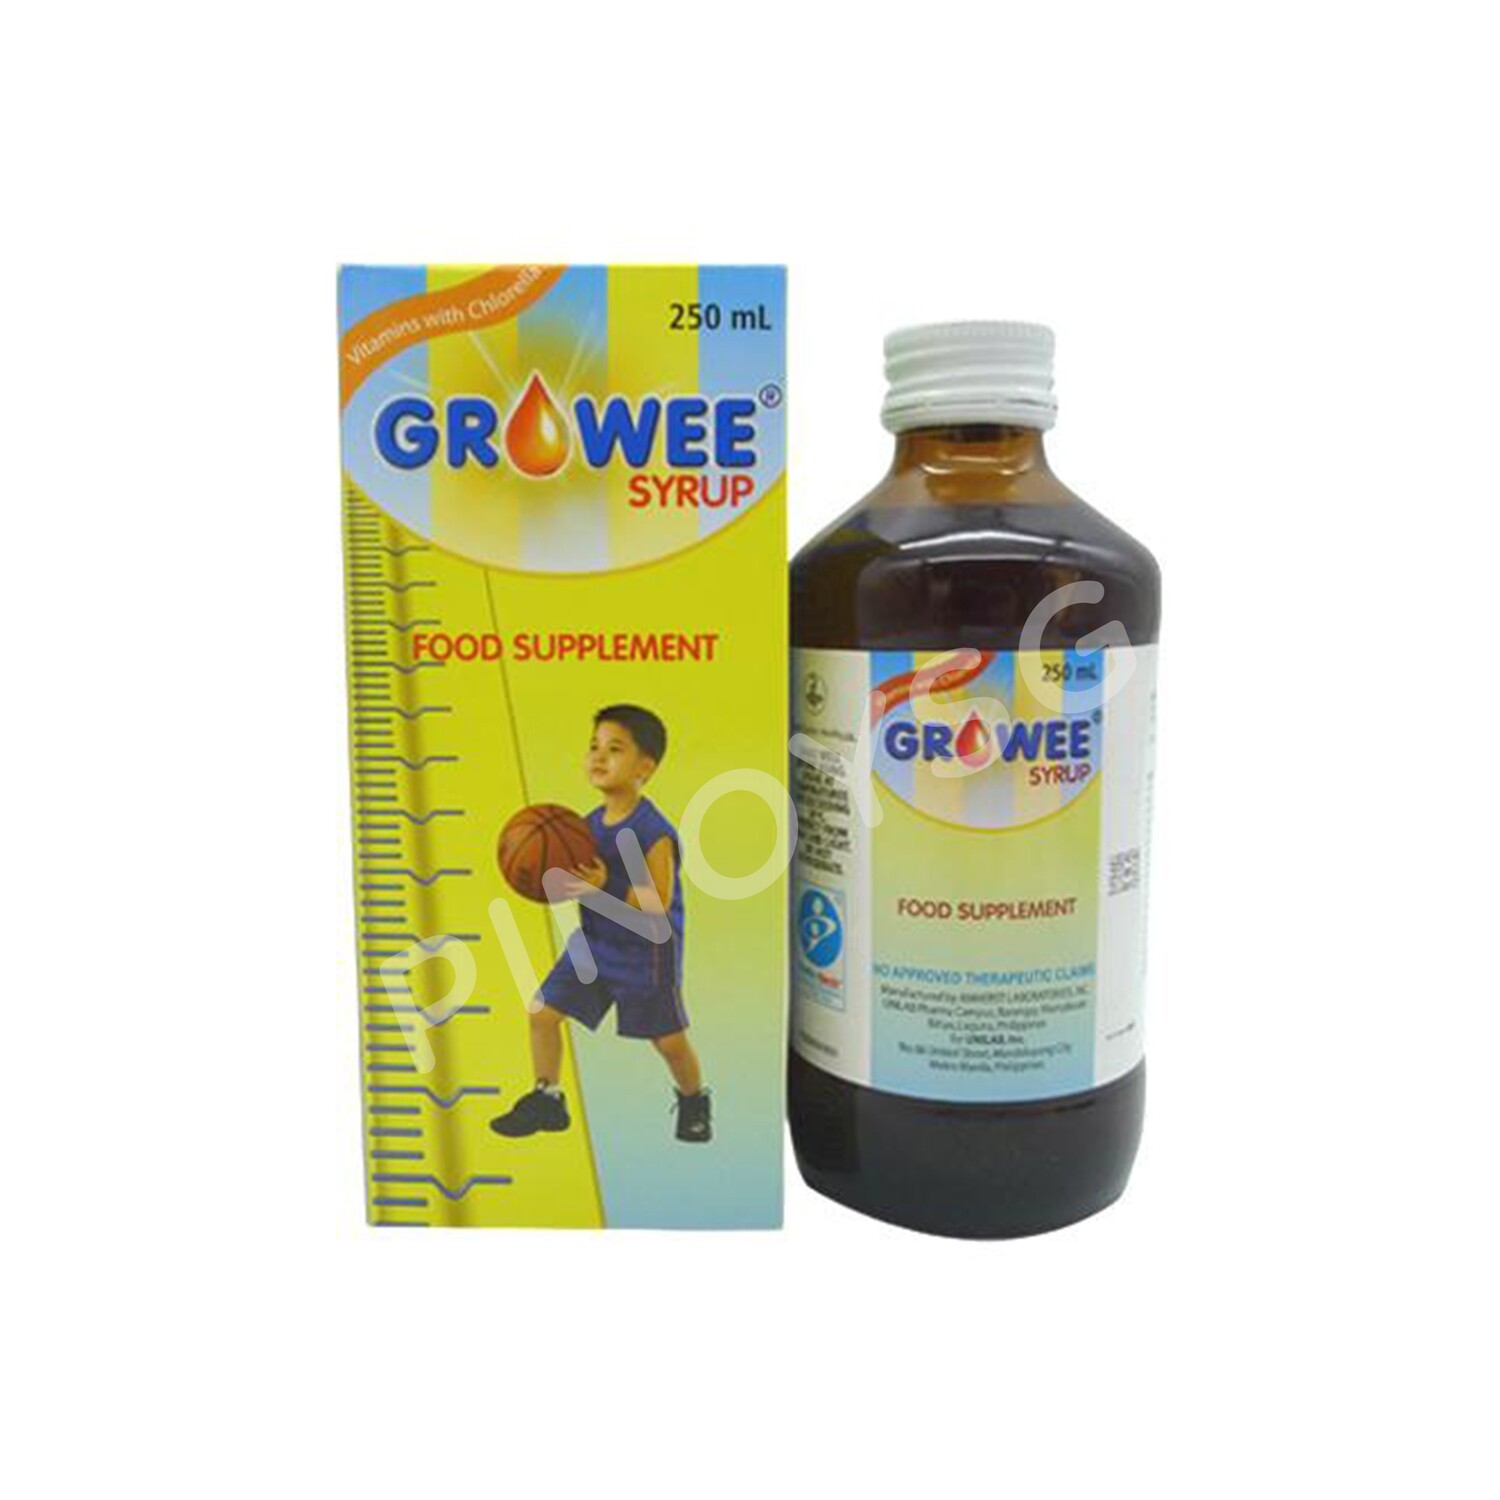 Growee Syrup 250ml